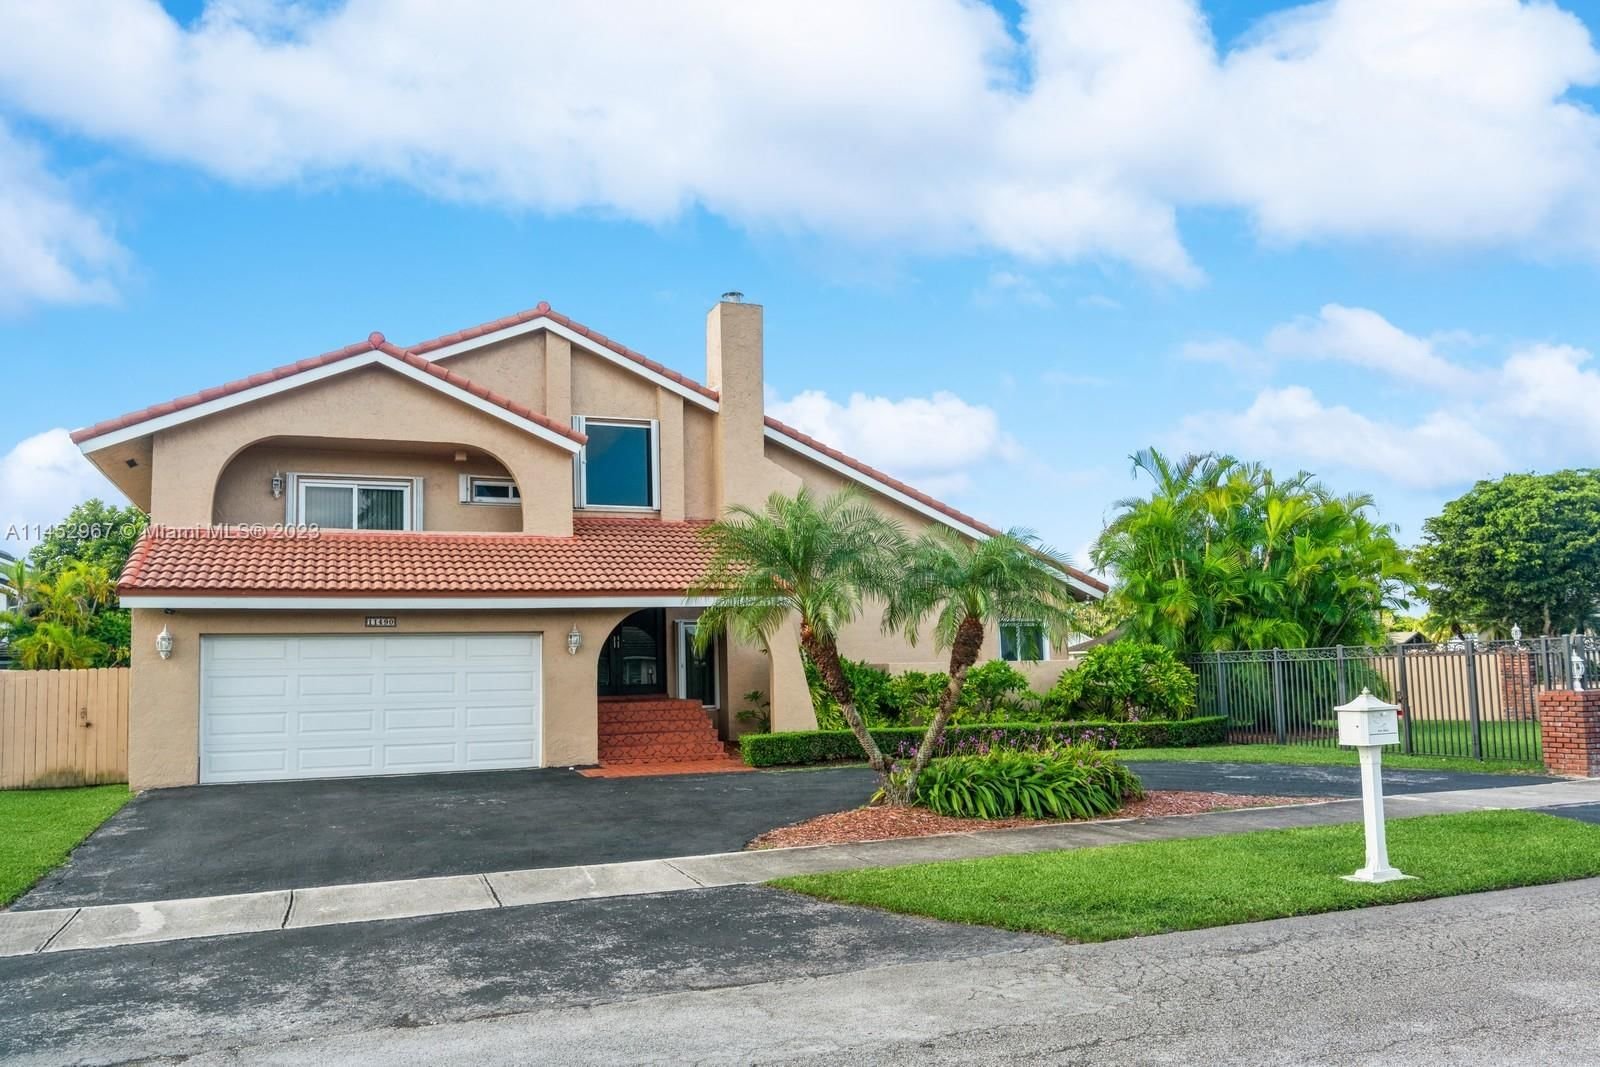 Real estate property located at 11490 101st Ter, Miami-Dade County, GLEN COVE SEC 2, Miami, FL